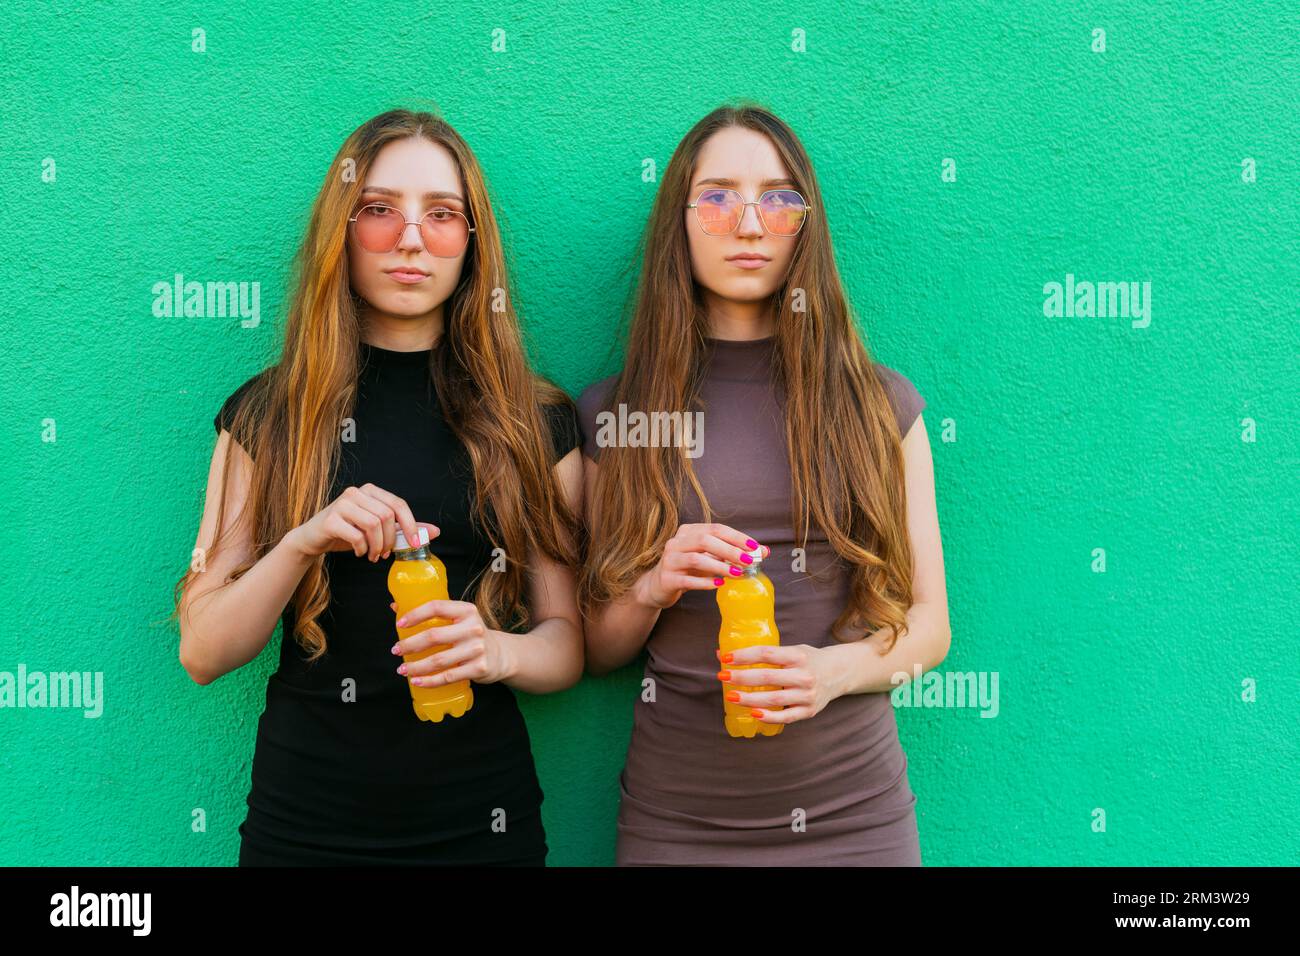 Jeunes sœurs jumelles mignonnes avec des lunettes de soleil cool tenant des bouteilles en plastique limonade jaune debout sur un fond de mur vert Banque D'Images